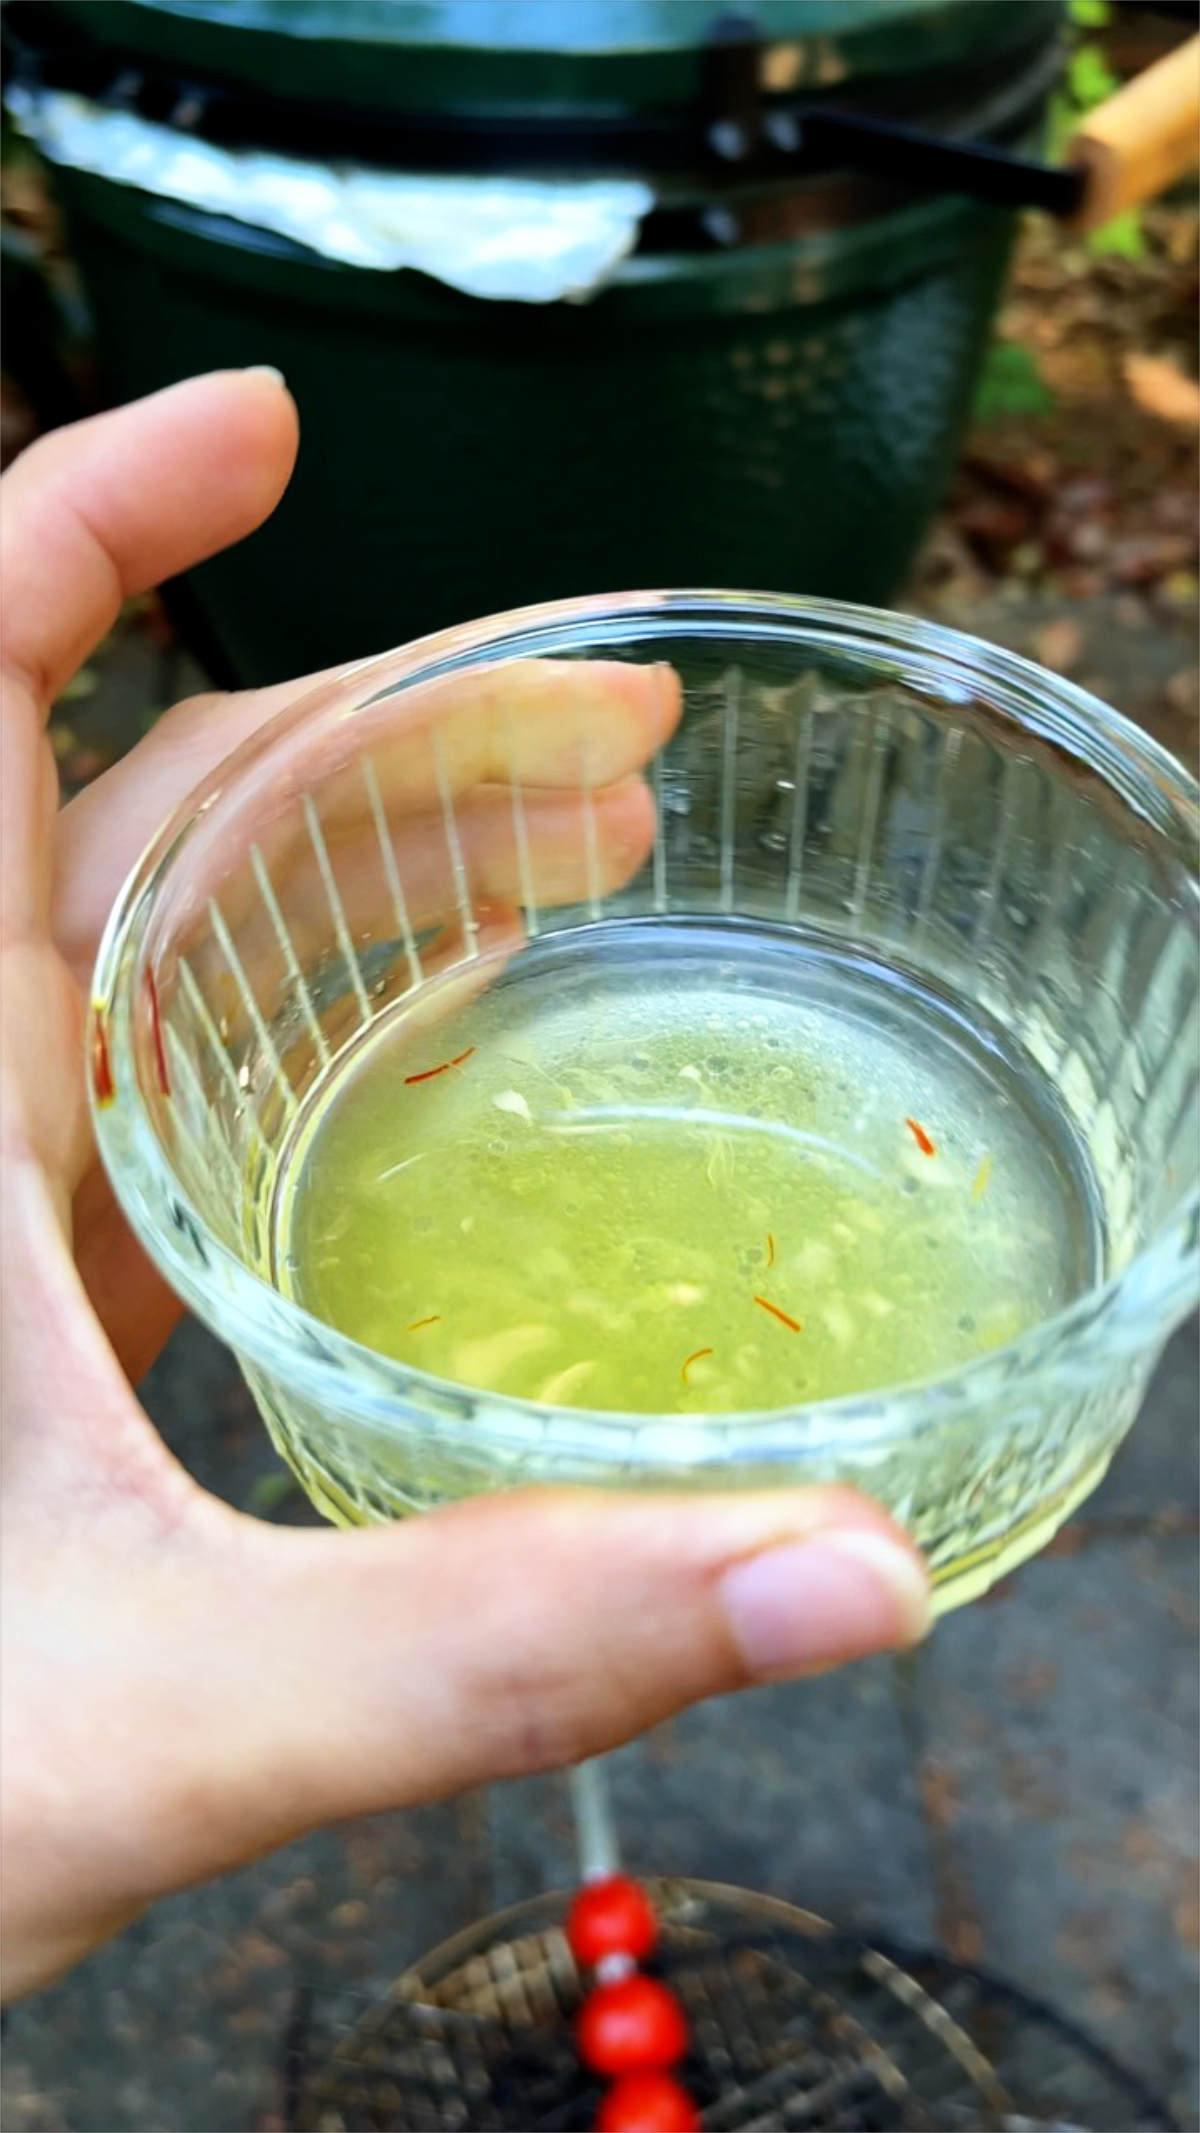 Yellow juice in a glass ramekin.